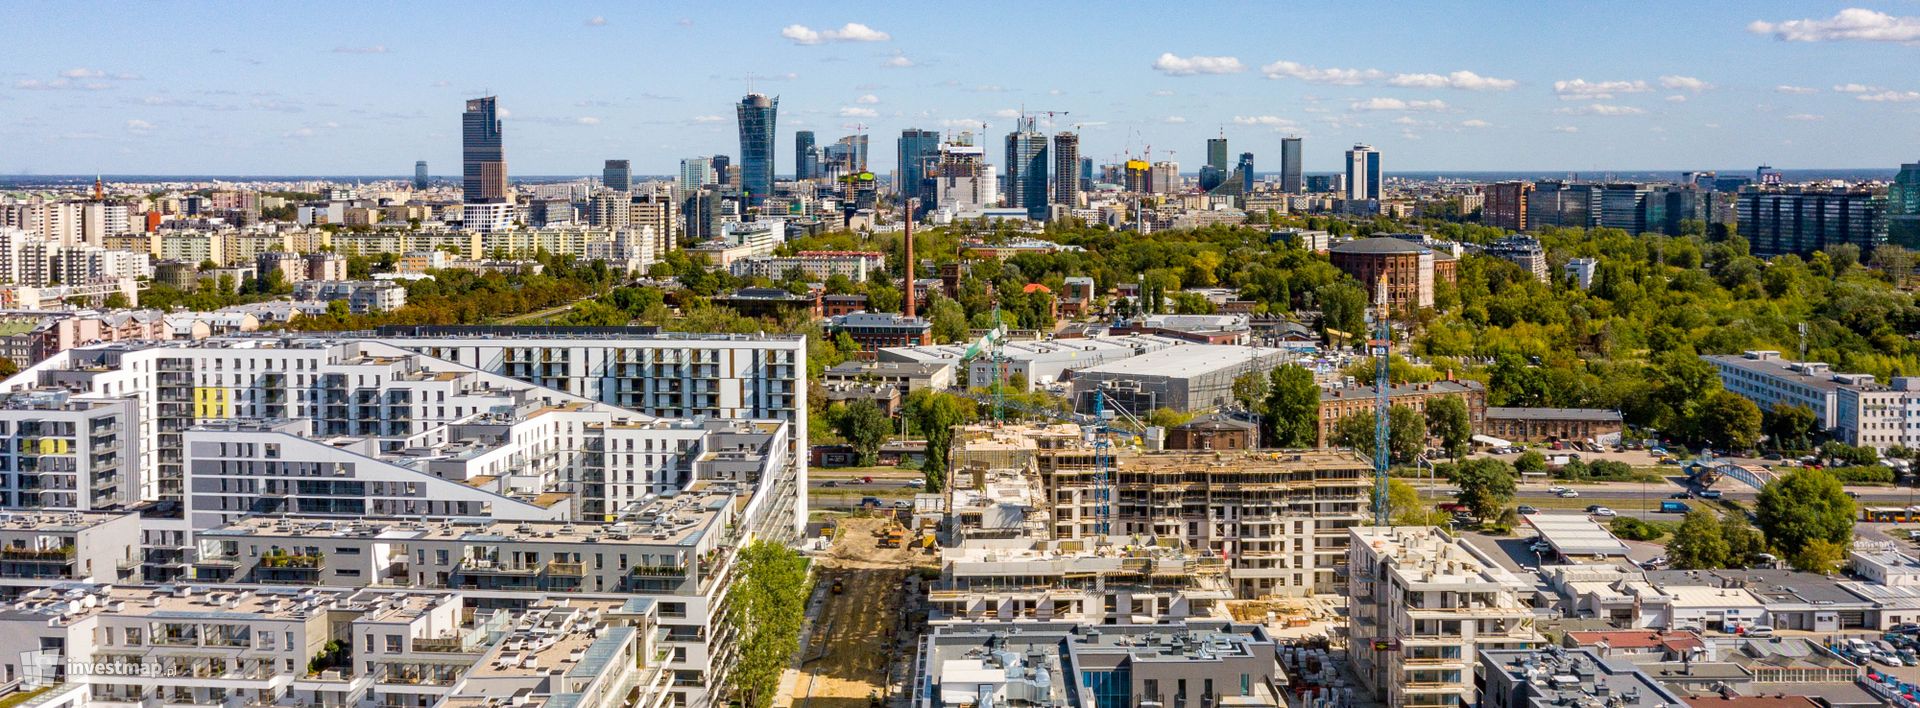 W I kwartale 2022 roku sprzedano w Polsce o 2 tys. mniej mieszkań niż średnia z ostatnich lat